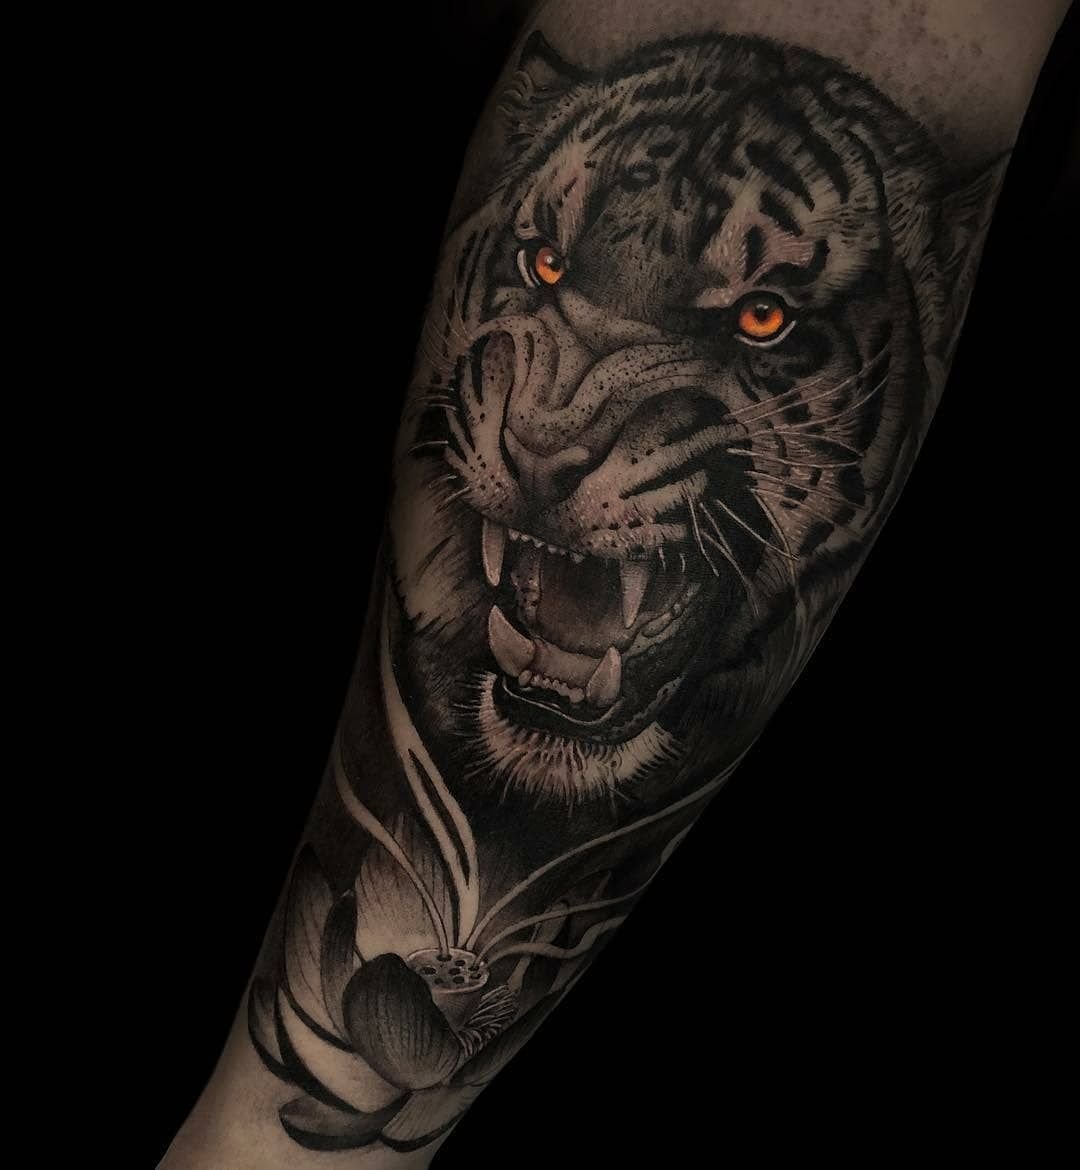 Тигр с оскалом тату на руке.